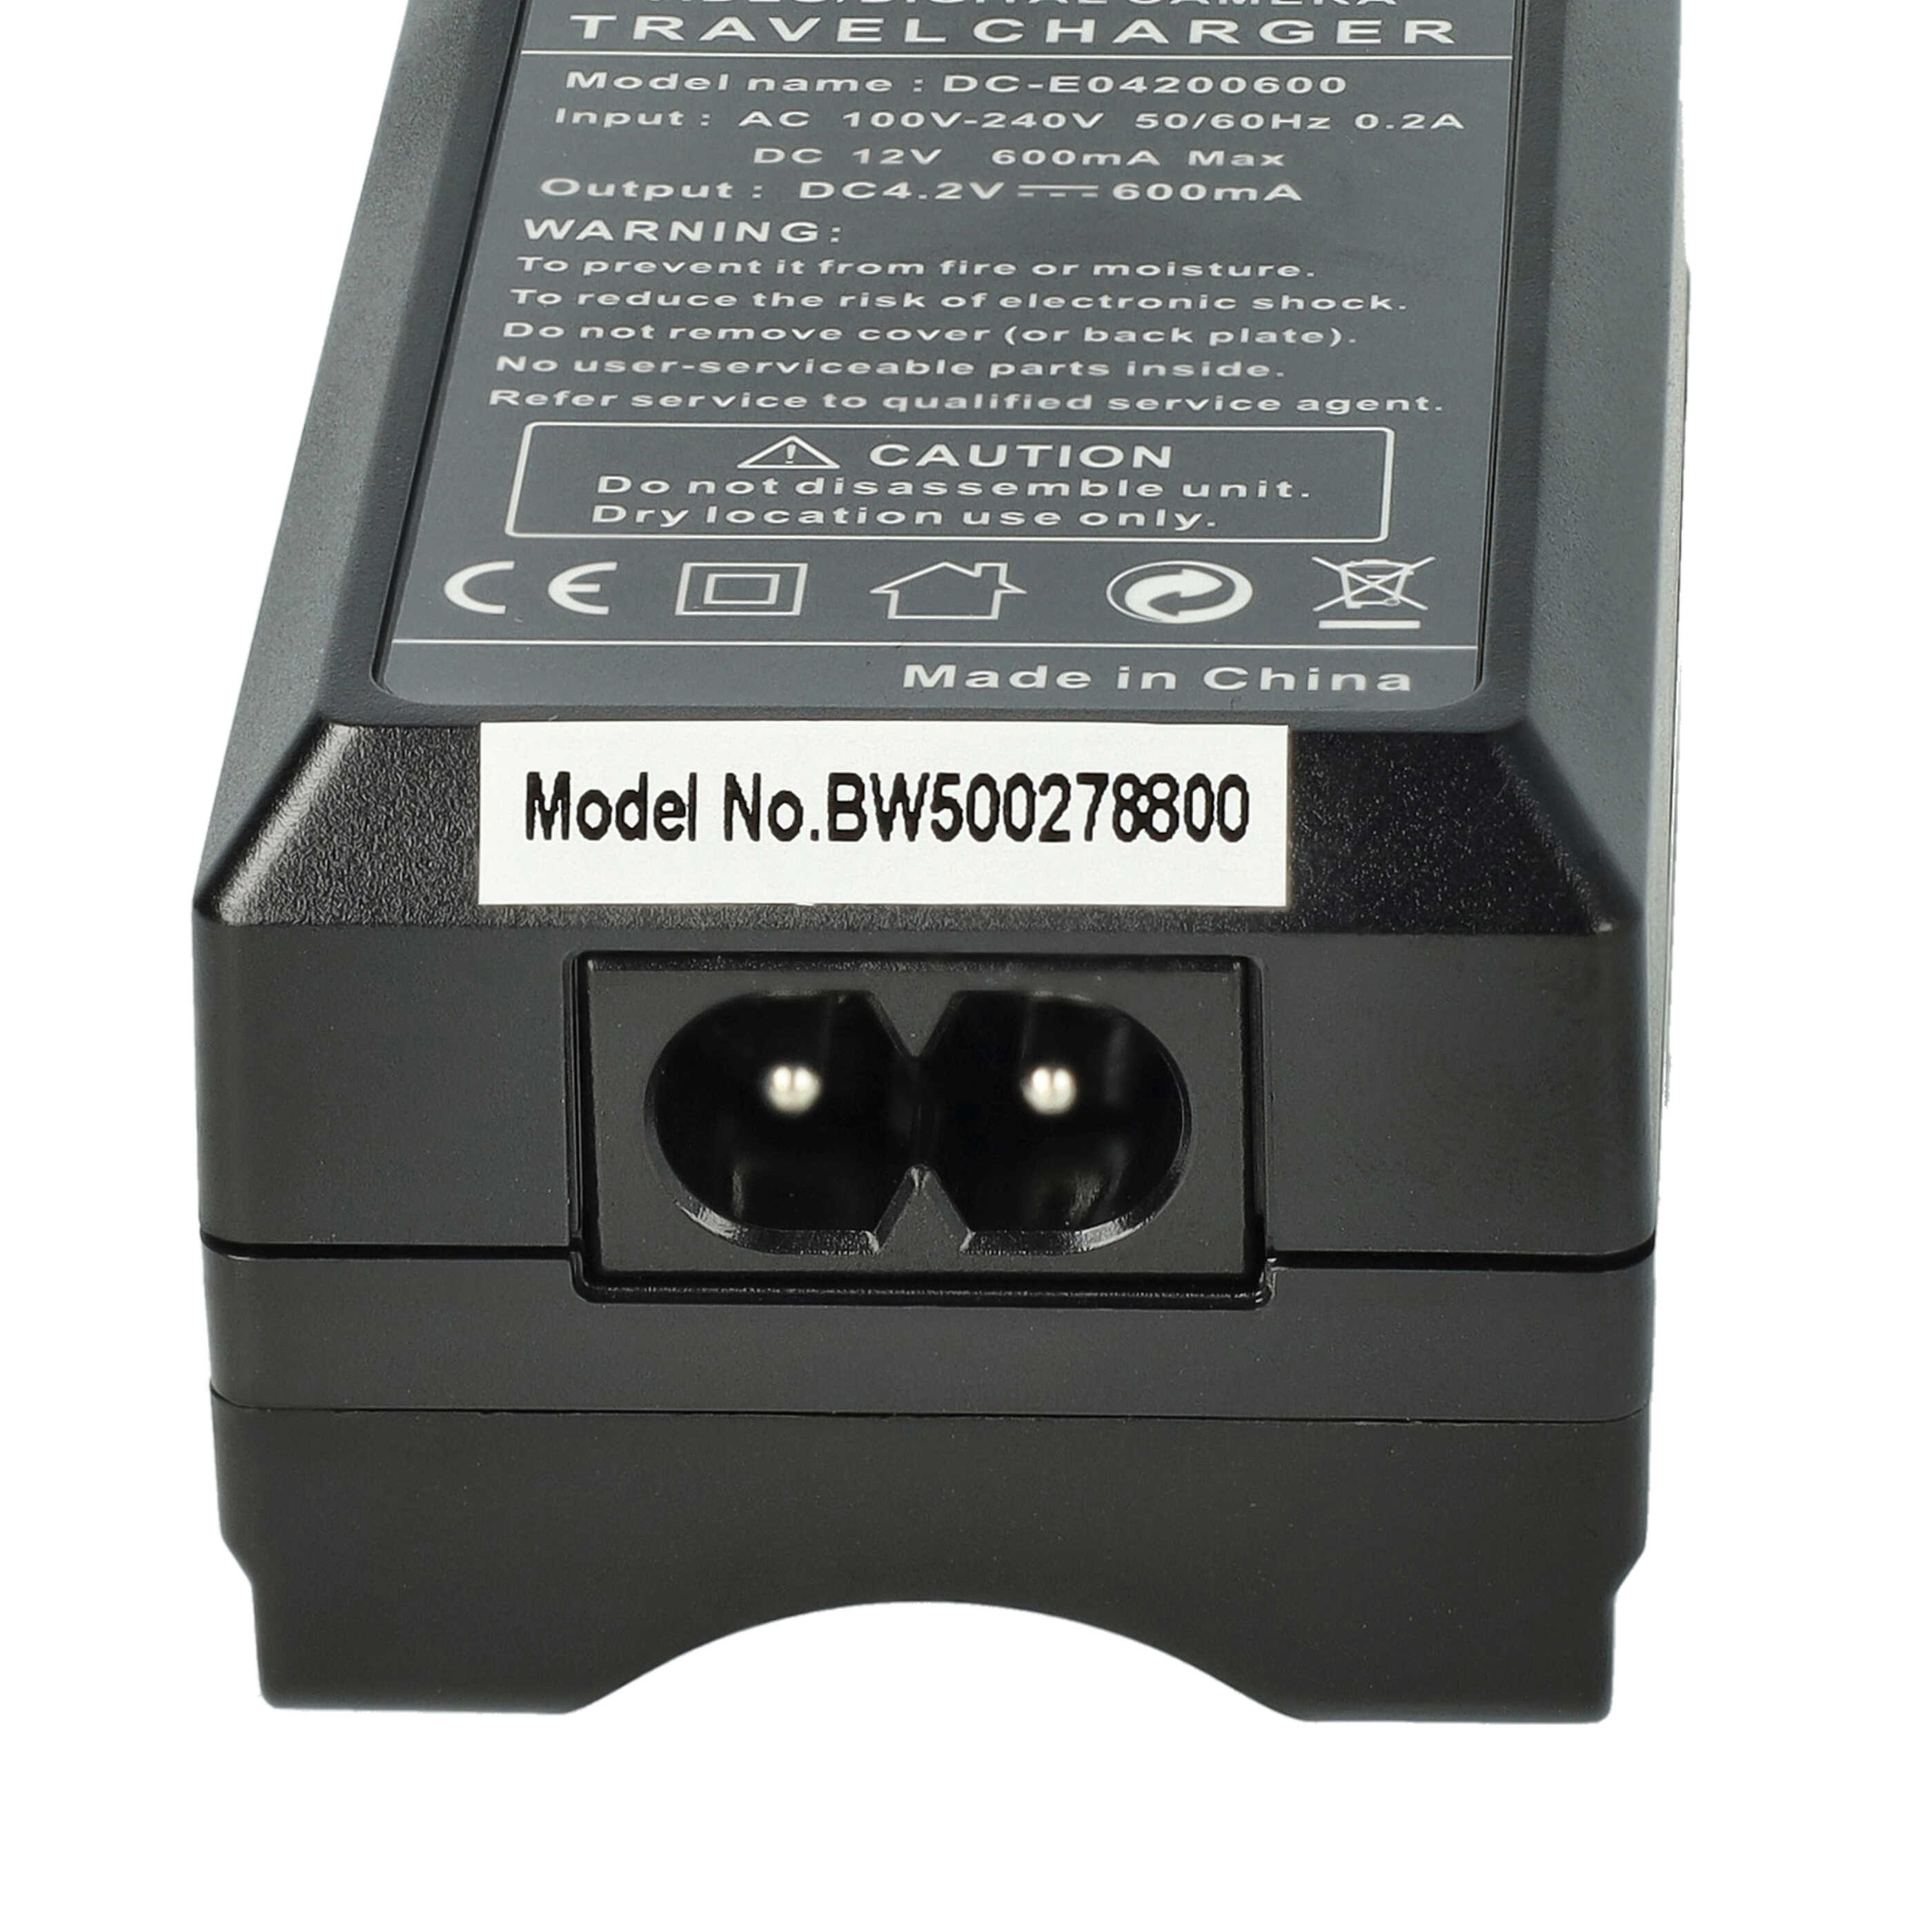 Ładowarka do aparatu Ricoh DB-90 i innych - ładowarka akumulatora 0,6 A, 4,2 V